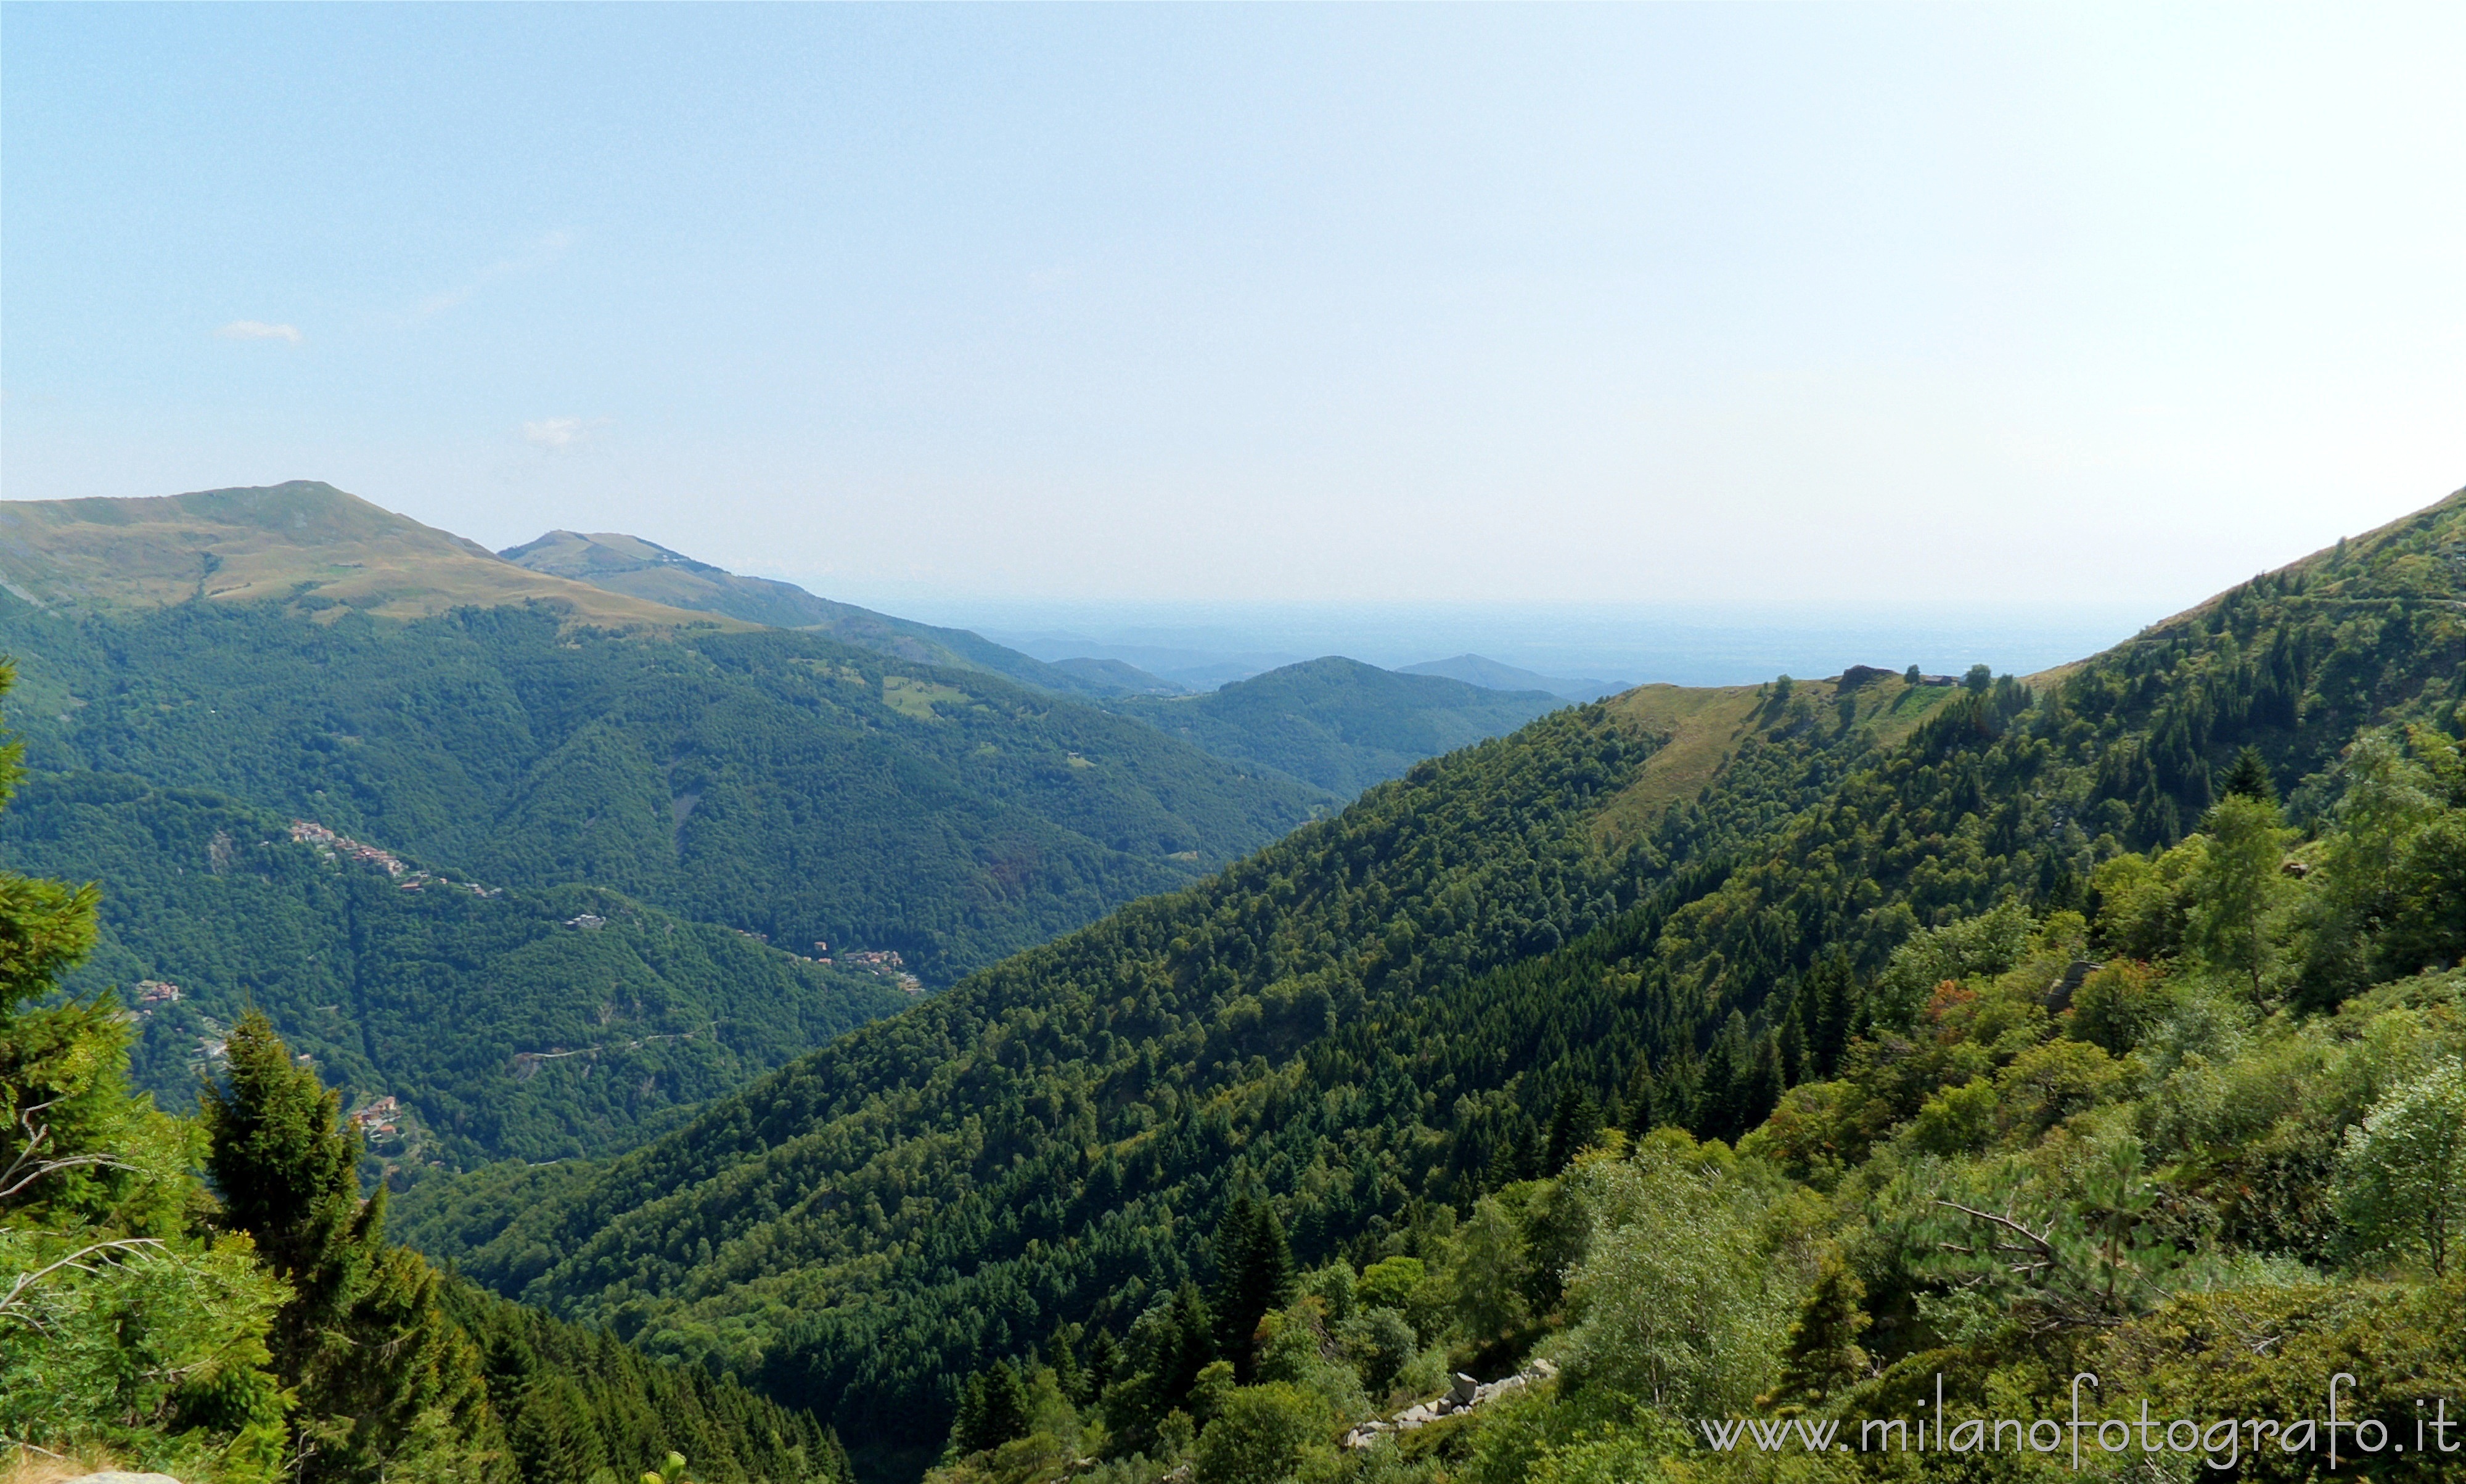 Campiglia Cervo (Biella, Italy): Panoramic view from the road San Giovanni - Oropa - Campiglia Cervo (Biella, Italy)